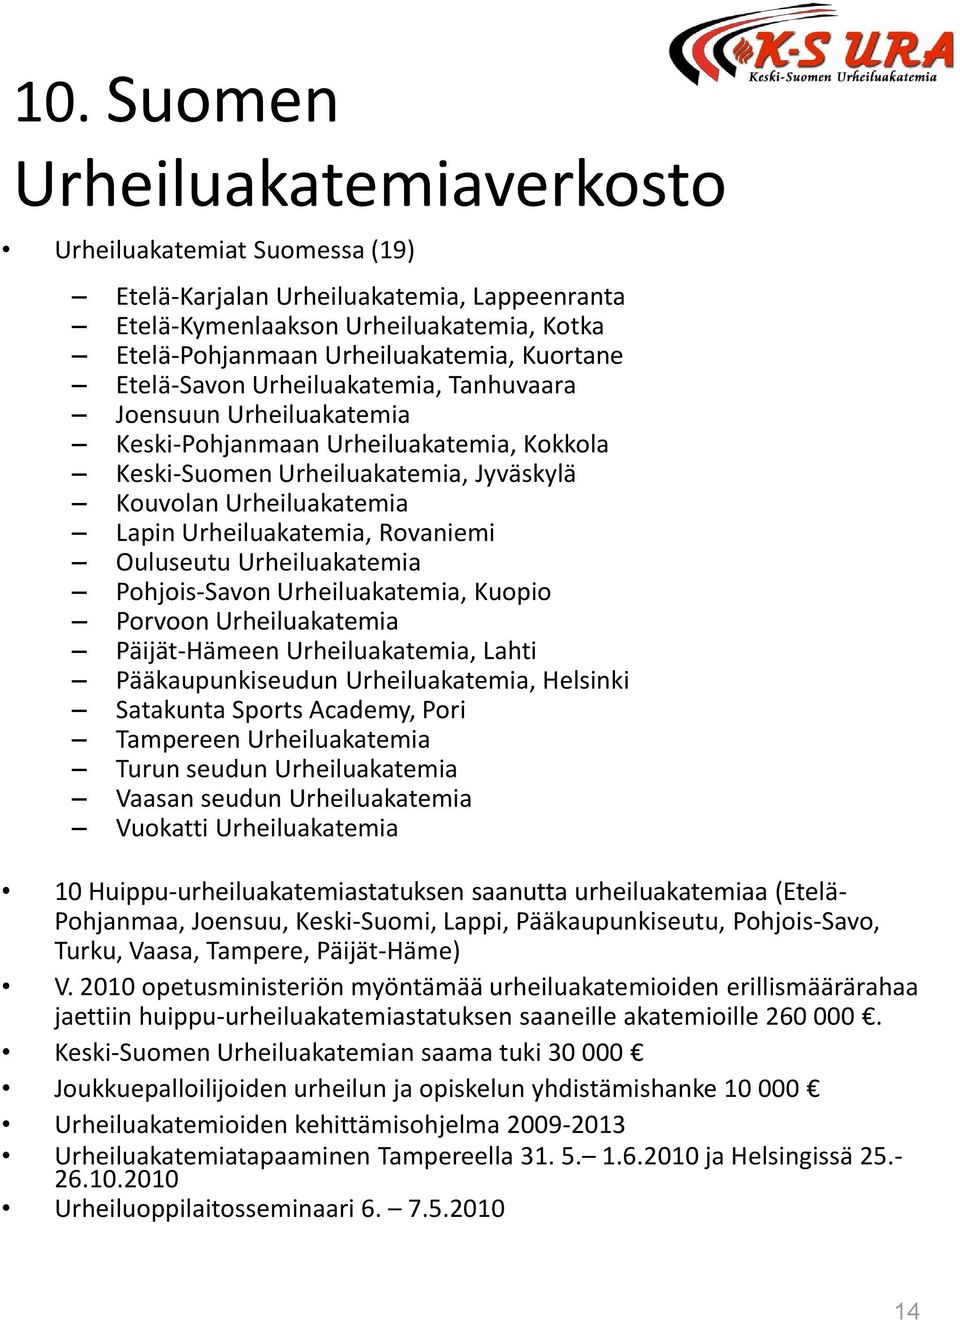 Rovaniemi Ouluseutu Urheiluakatemia Pohjois-Savon Urheiluakatemia, Kuopio Porvoon Urheiluakatemia Päijät-Hämeen Urheiluakatemia, Lahti Pääkaupunkiseudun Urheiluakatemia, Helsinki Satakunta Sports